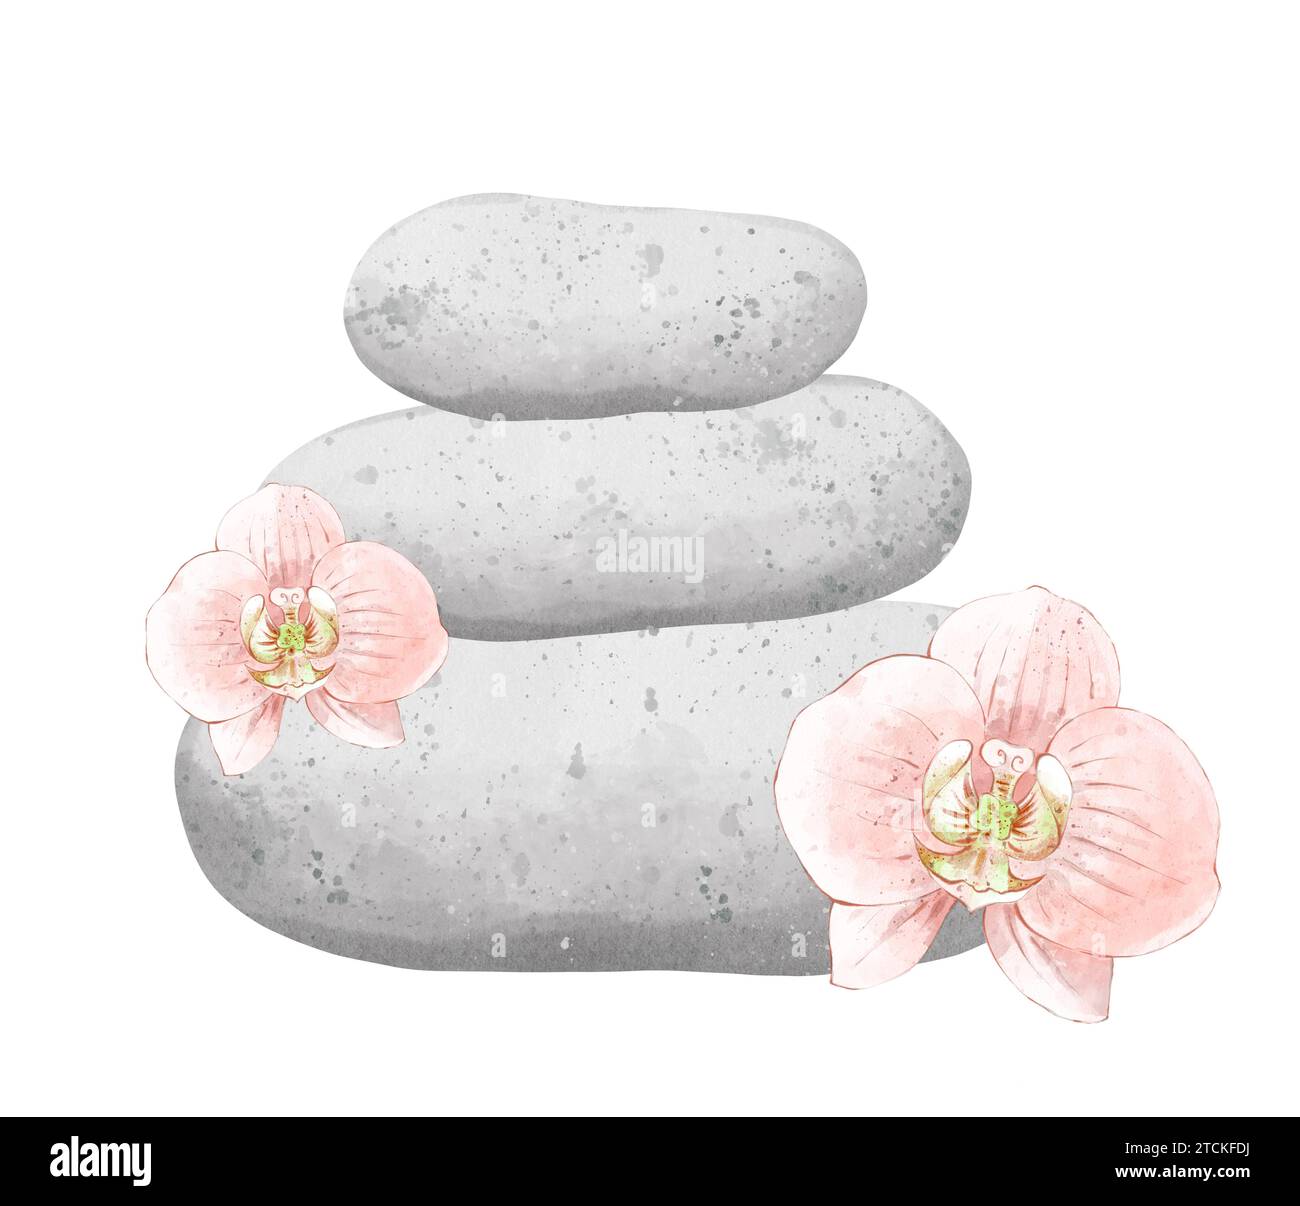 Aromathérapie, composition avec des fleurs d'orchidée et des pierres pour le massage. Concept mode de vie sain, soins de la peau, soins spa. L'illustration dessinée à la main est Banque D'Images